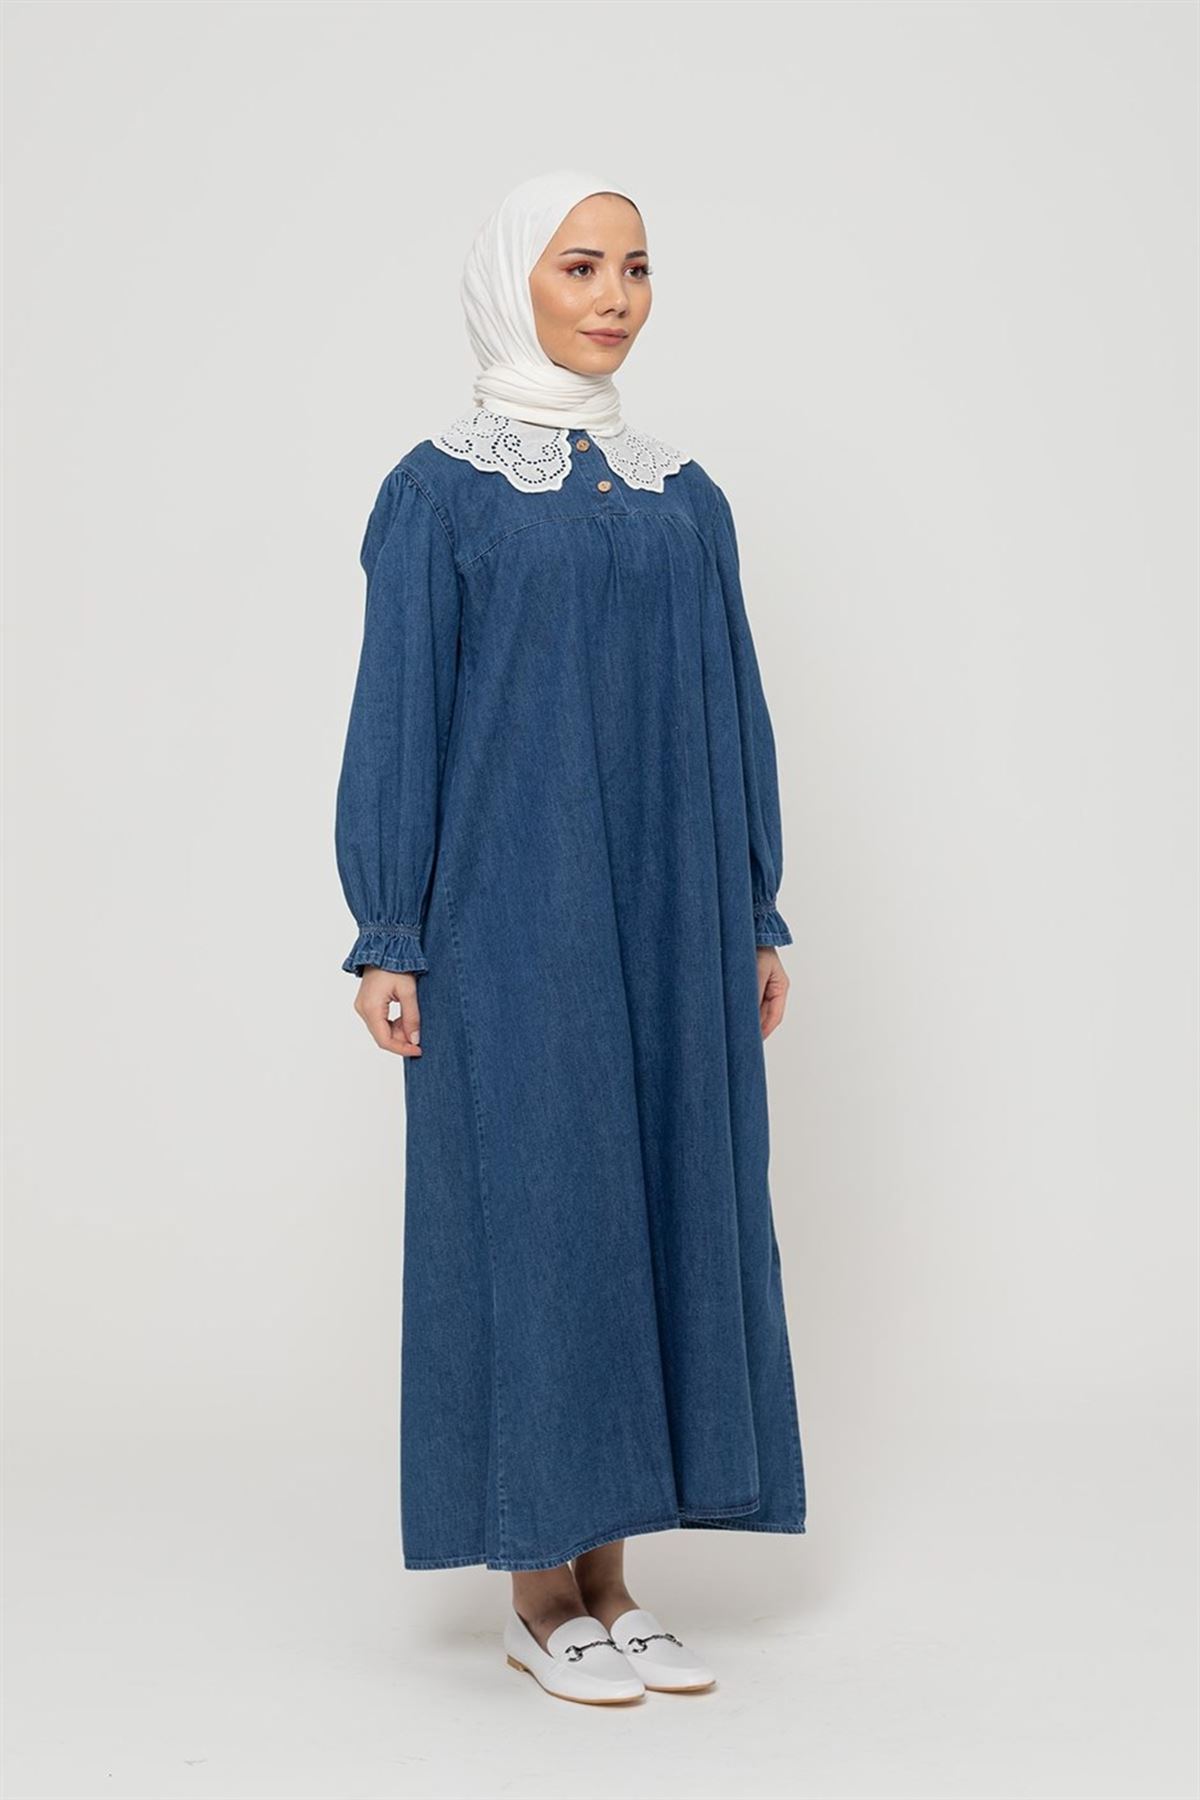 Kadın Yaka Dantelli Kot Elbise - Koyu Mavi